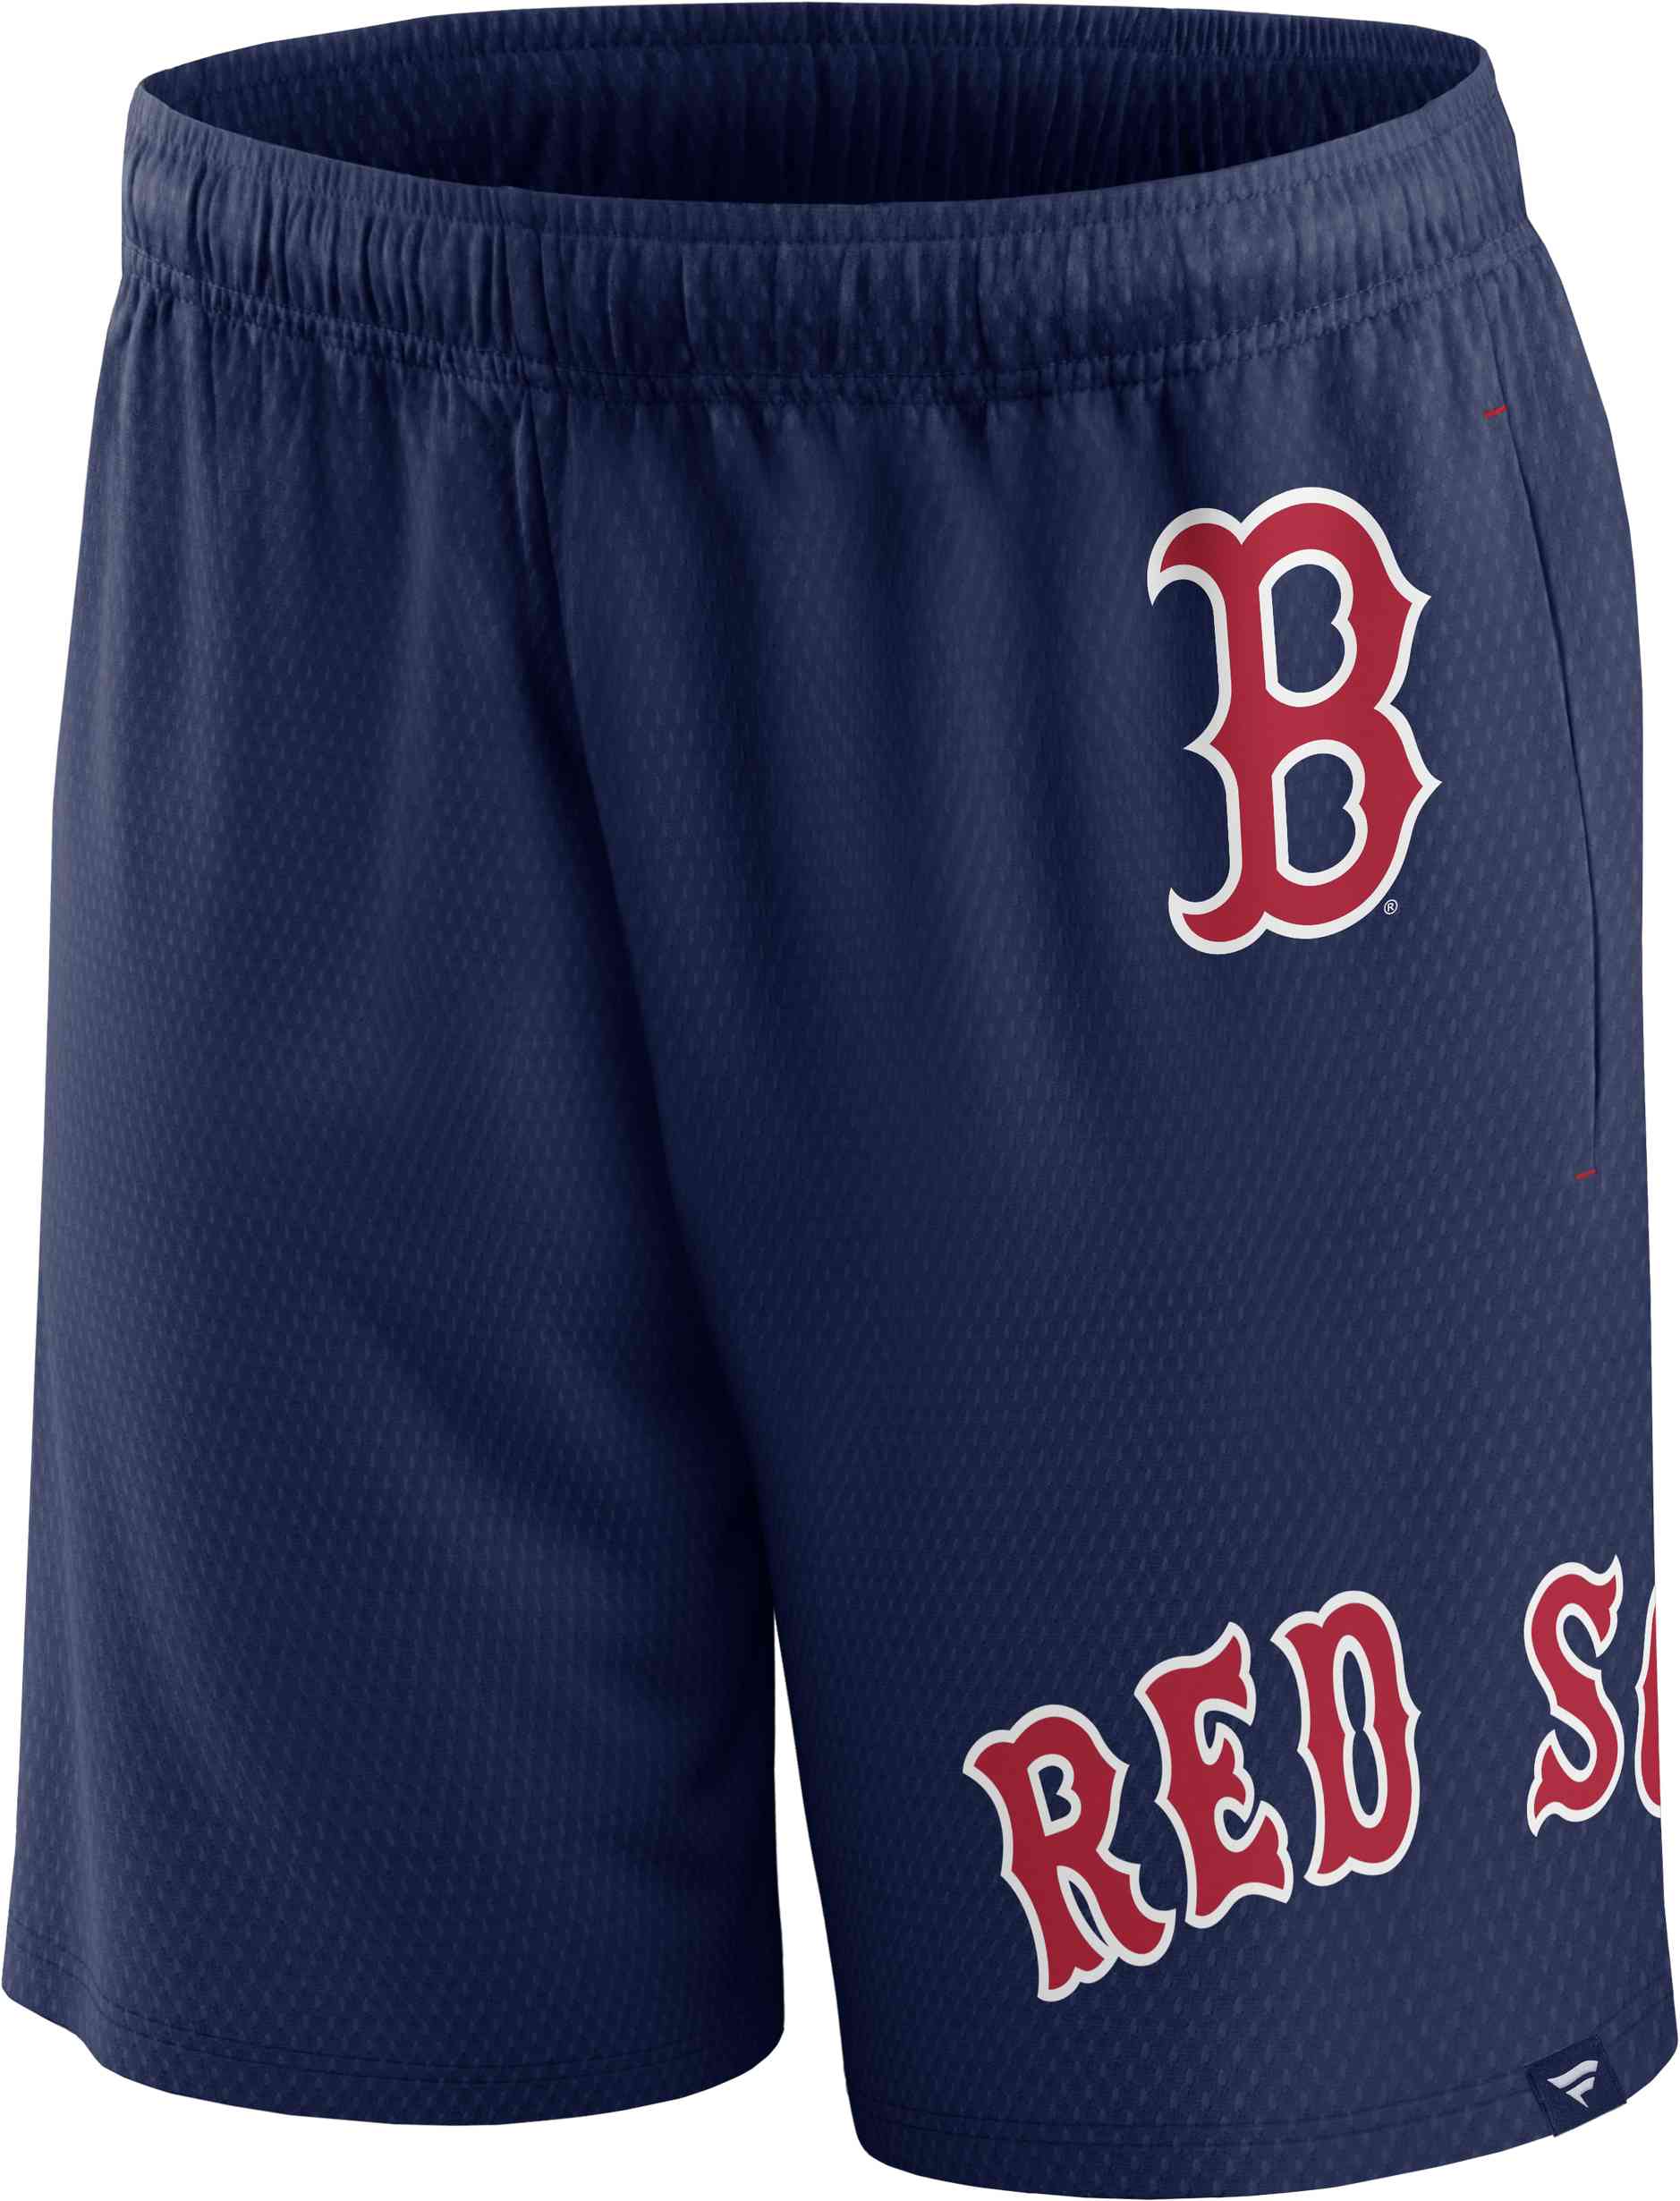 Fanatics - MLB Boston Red Sox Mesh Shorts